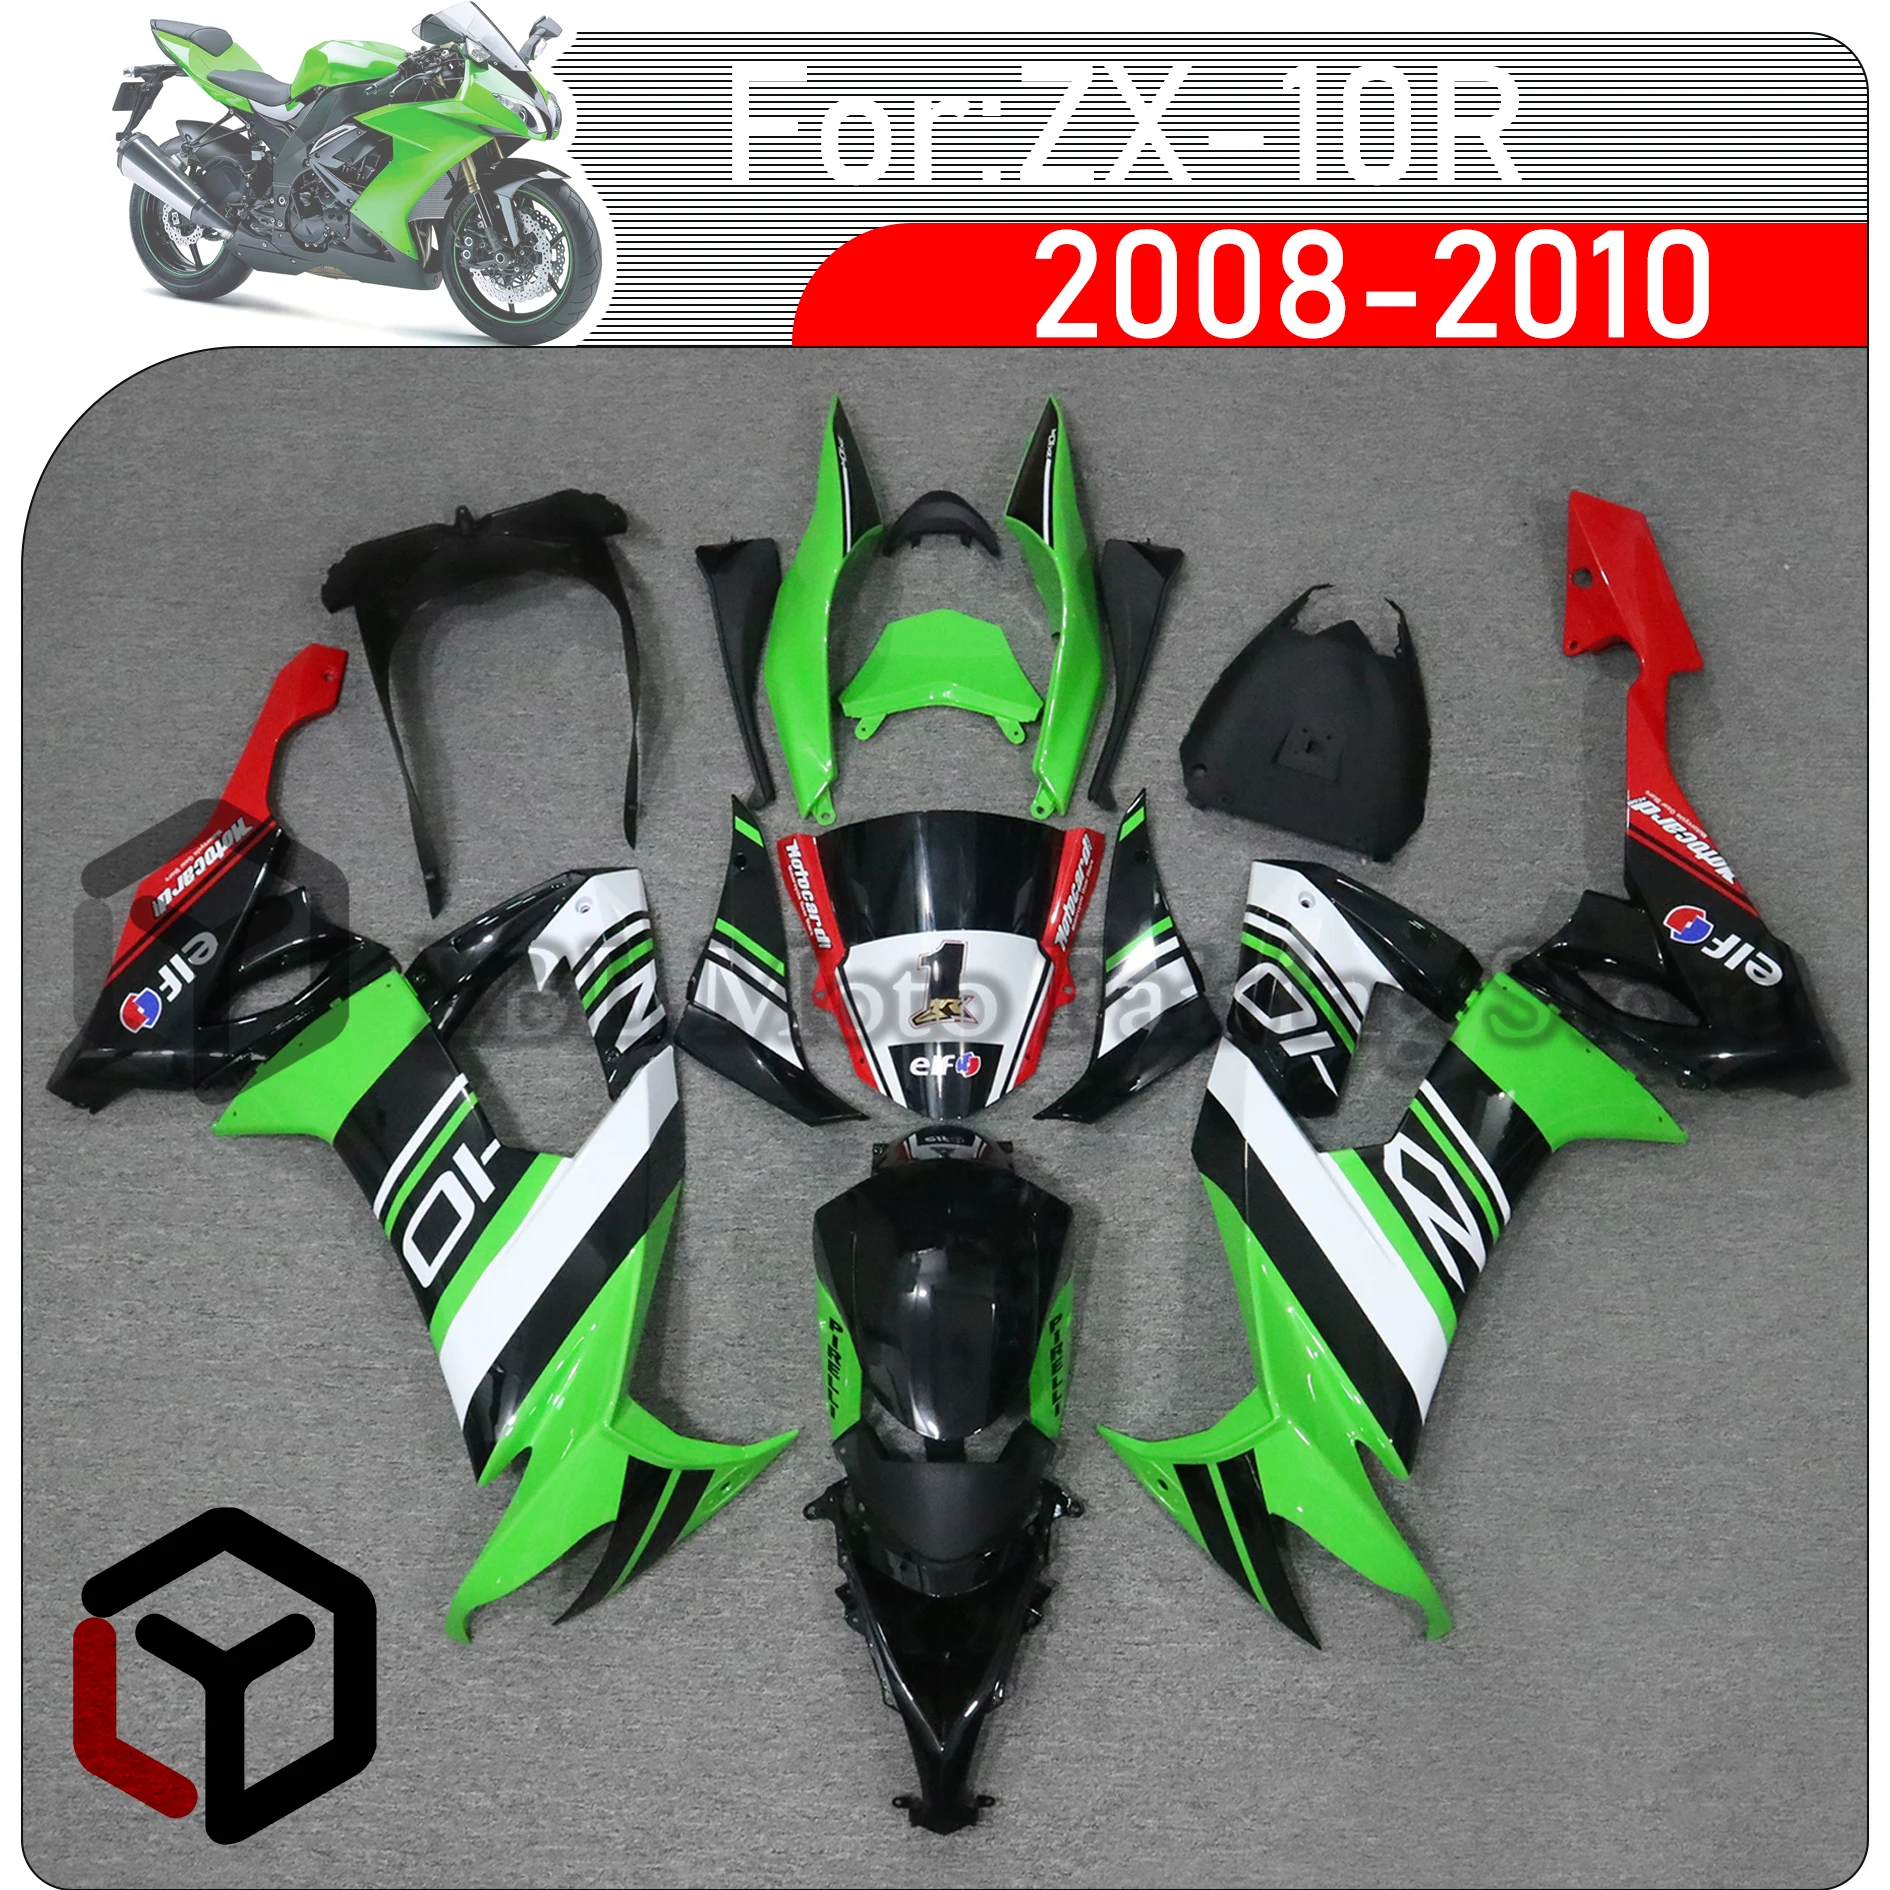 

Комплект обтекателей для мотоцикла ABS, подходит для Kawasaki Ninja ZX-10R ZX10R 2008 2009 2010, комплект обтекателей для ZX 10R 08 09 10